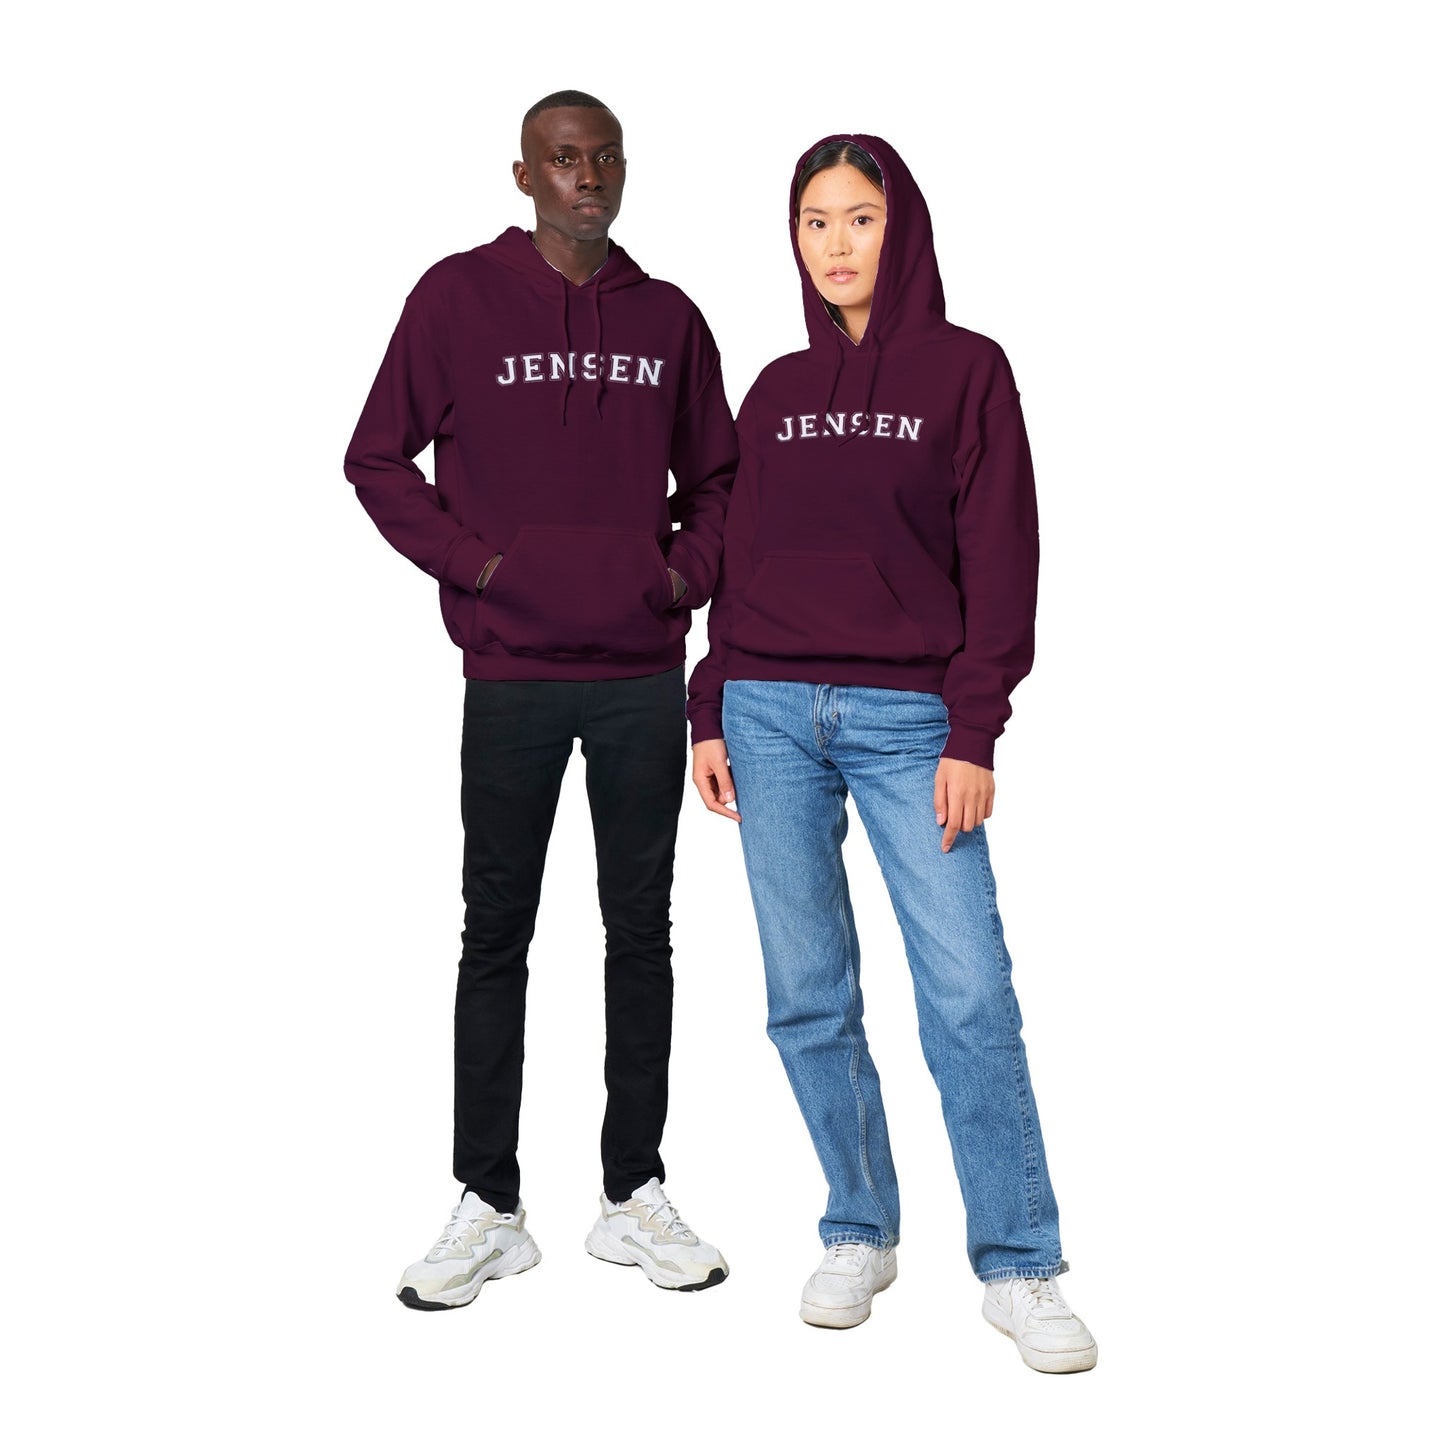 JENSEN - Unisex hoodie - 5 färger